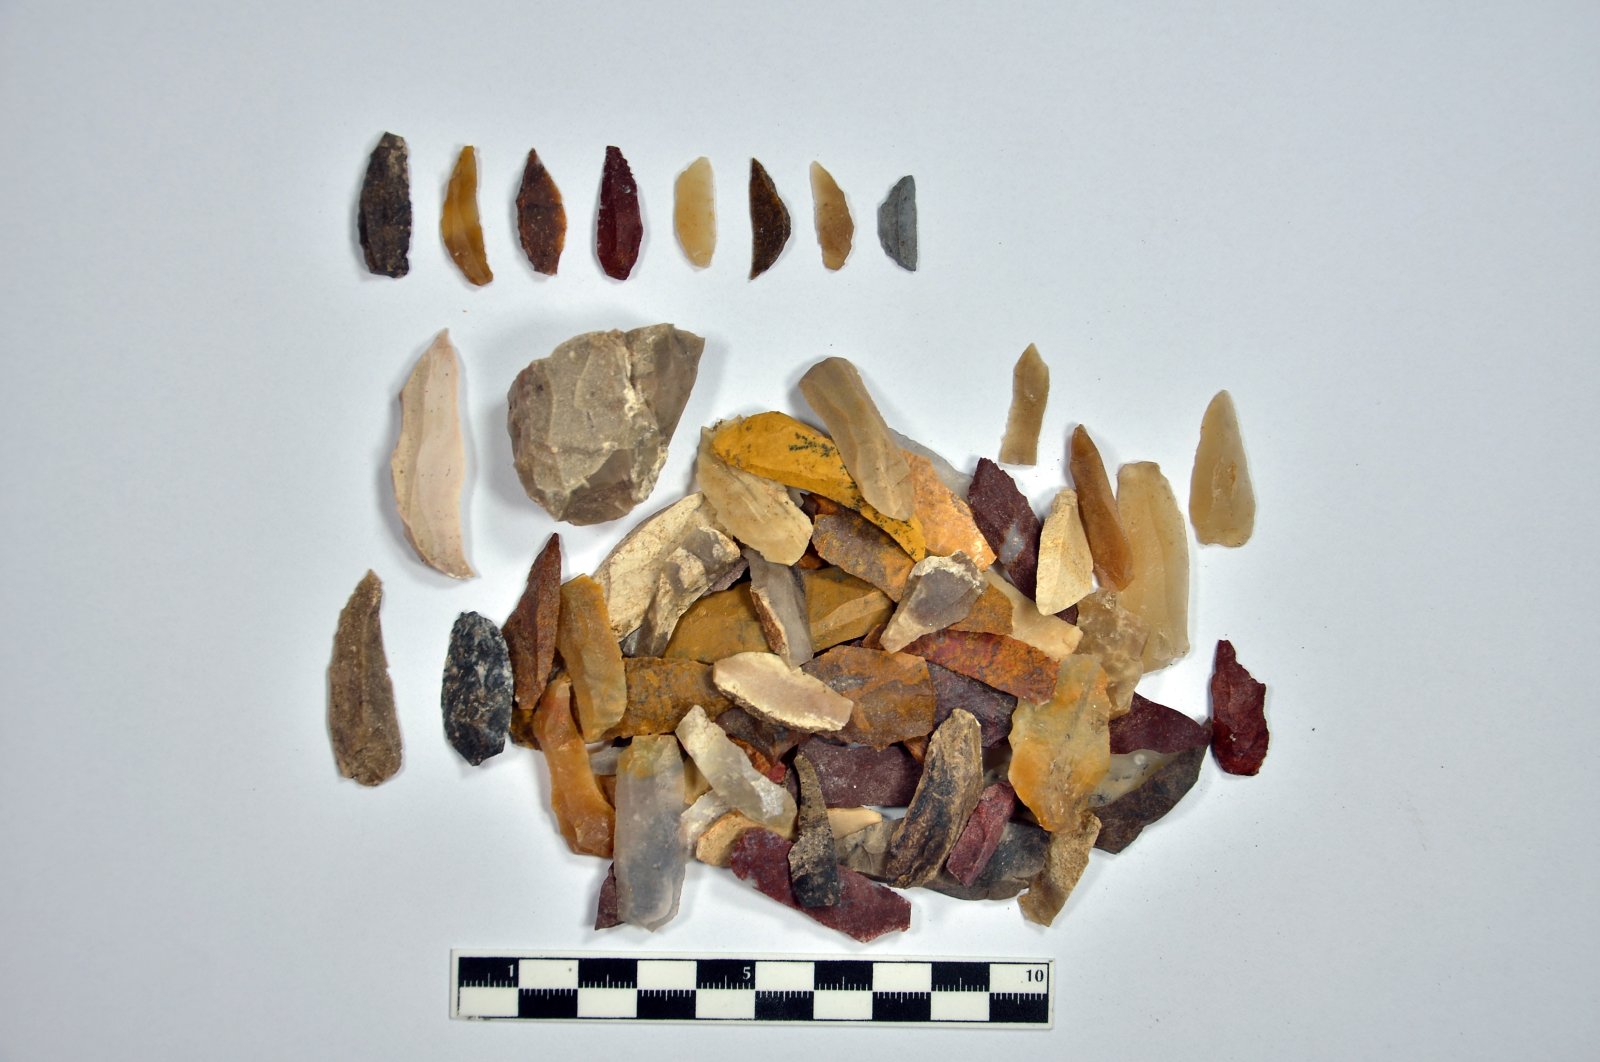 Alat-alat batu berusia 14.000 tahun, sisa-sisa tulang ditemukan di Turki barat